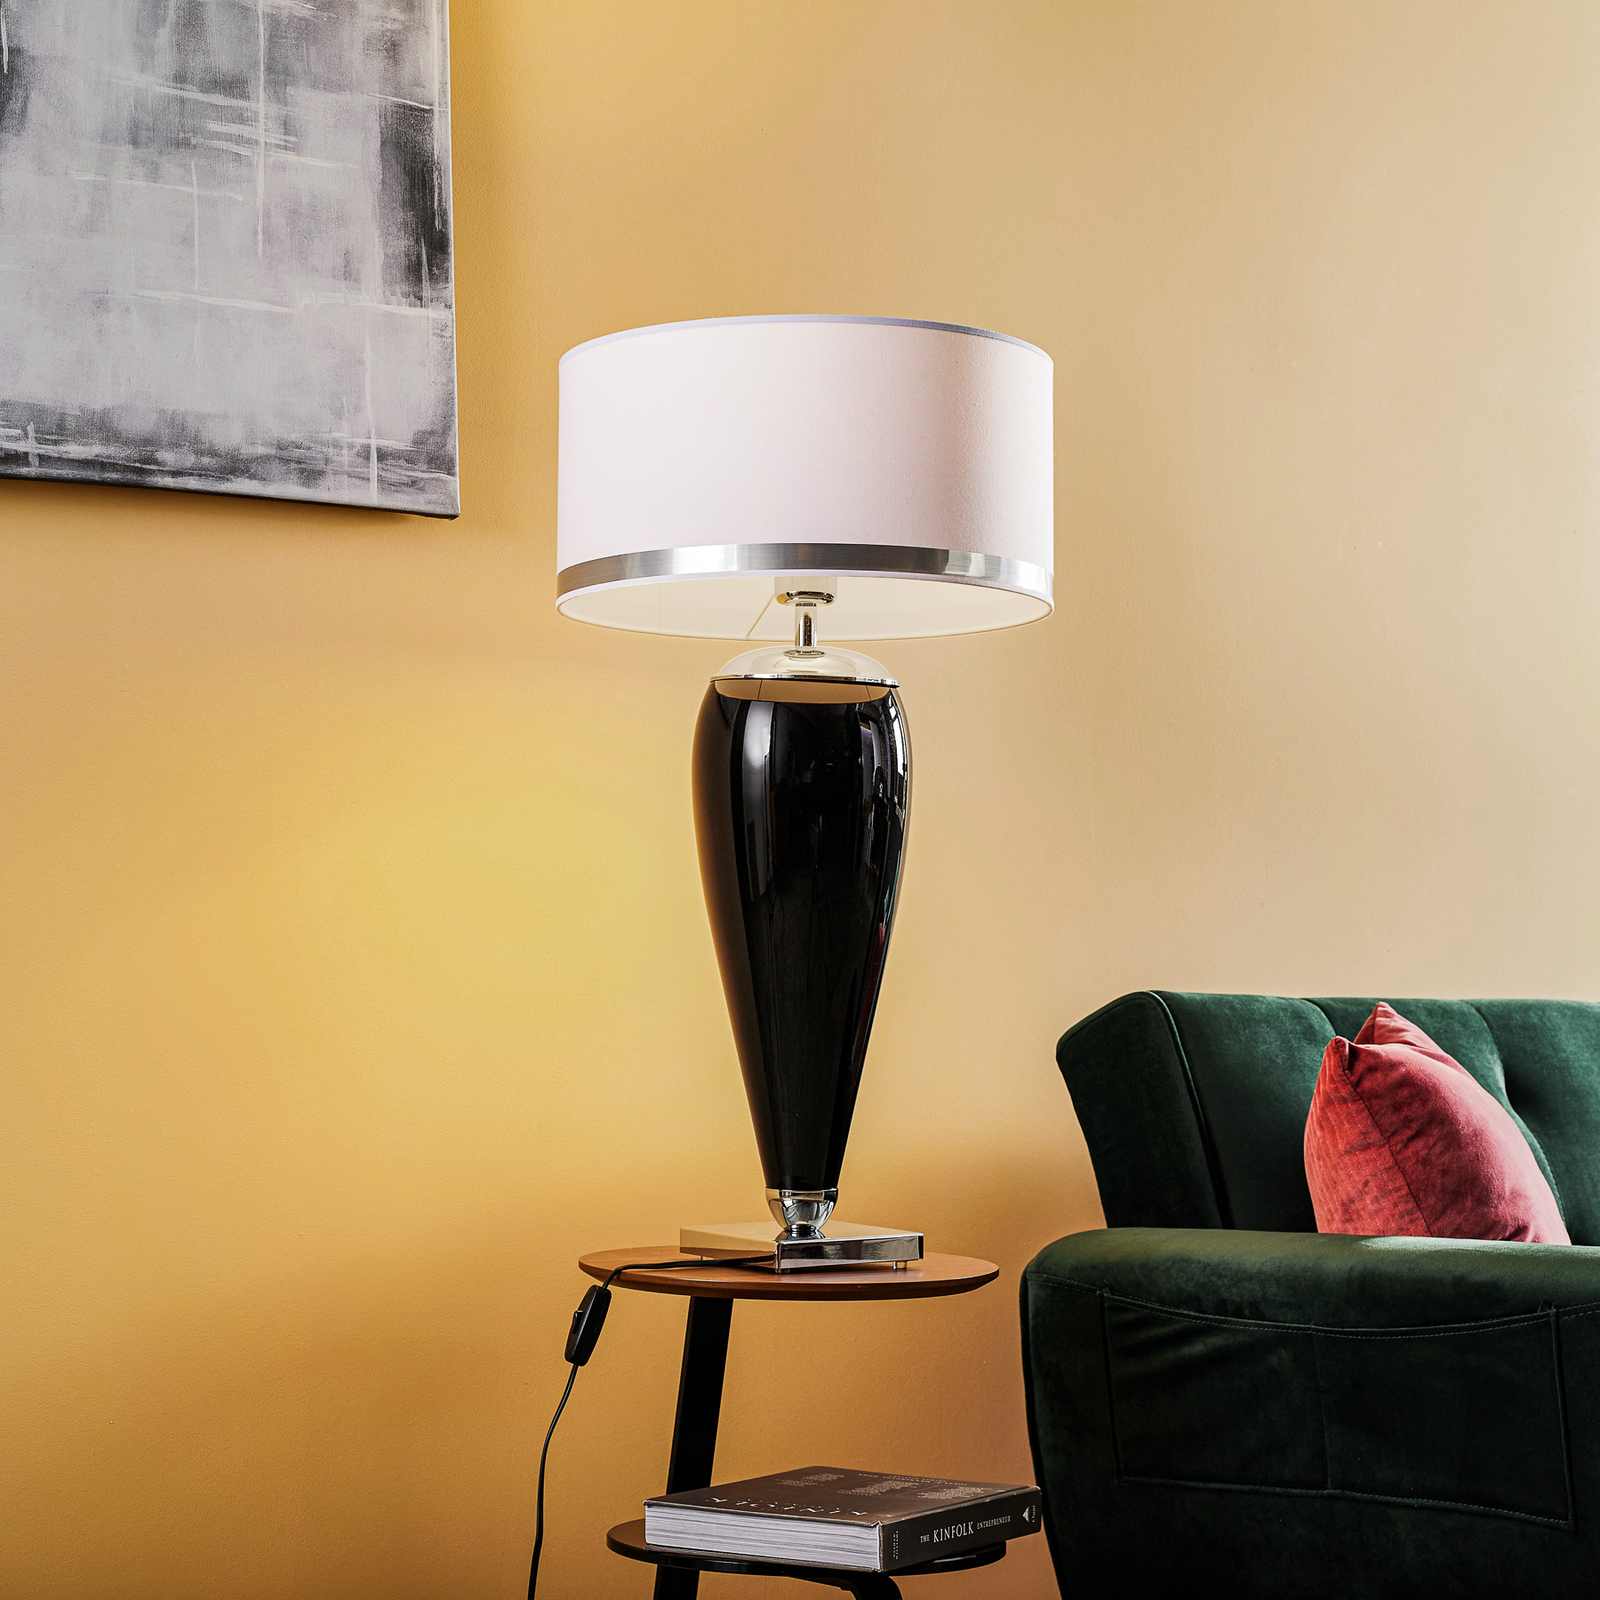 Bordslampa Lund i vitt och svart, höjd 70 cm